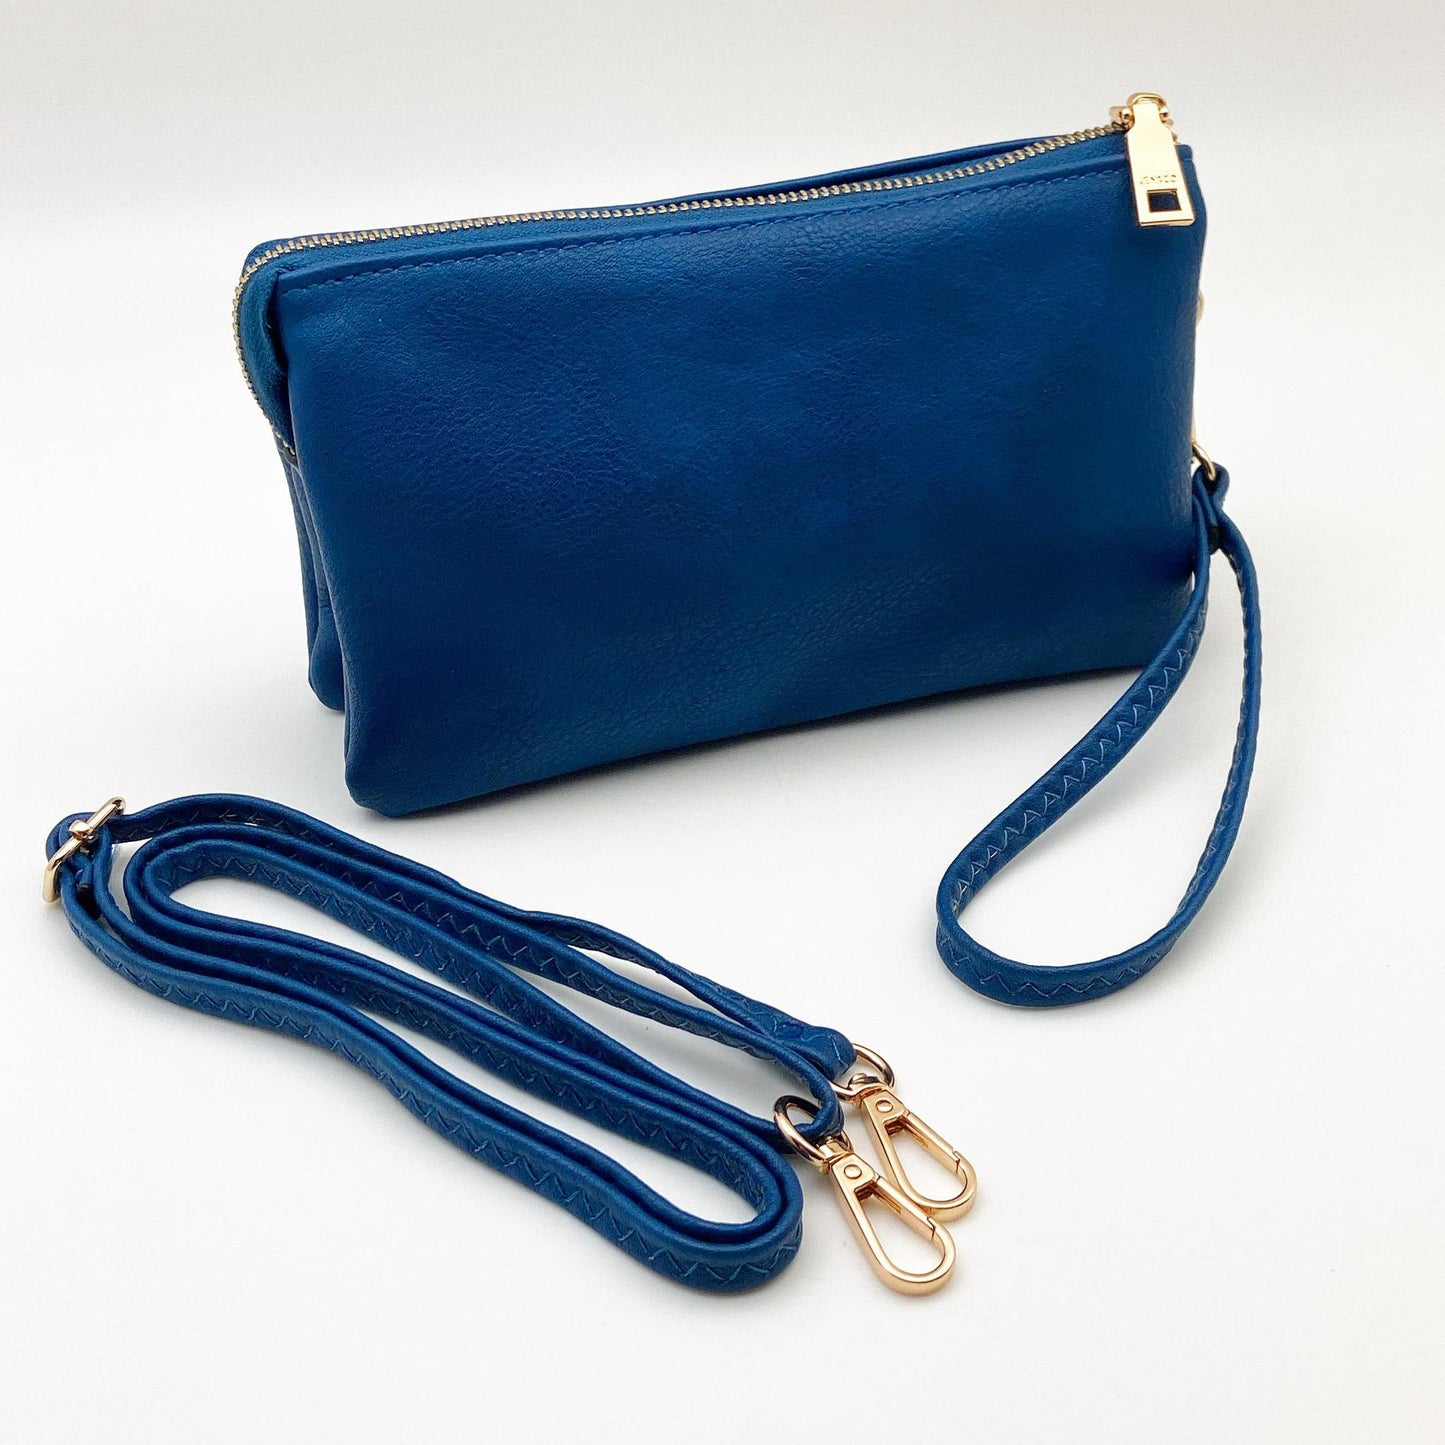 4 in 1 Handbag - Crossbody/Clutch/Wristlet - Royal Blue